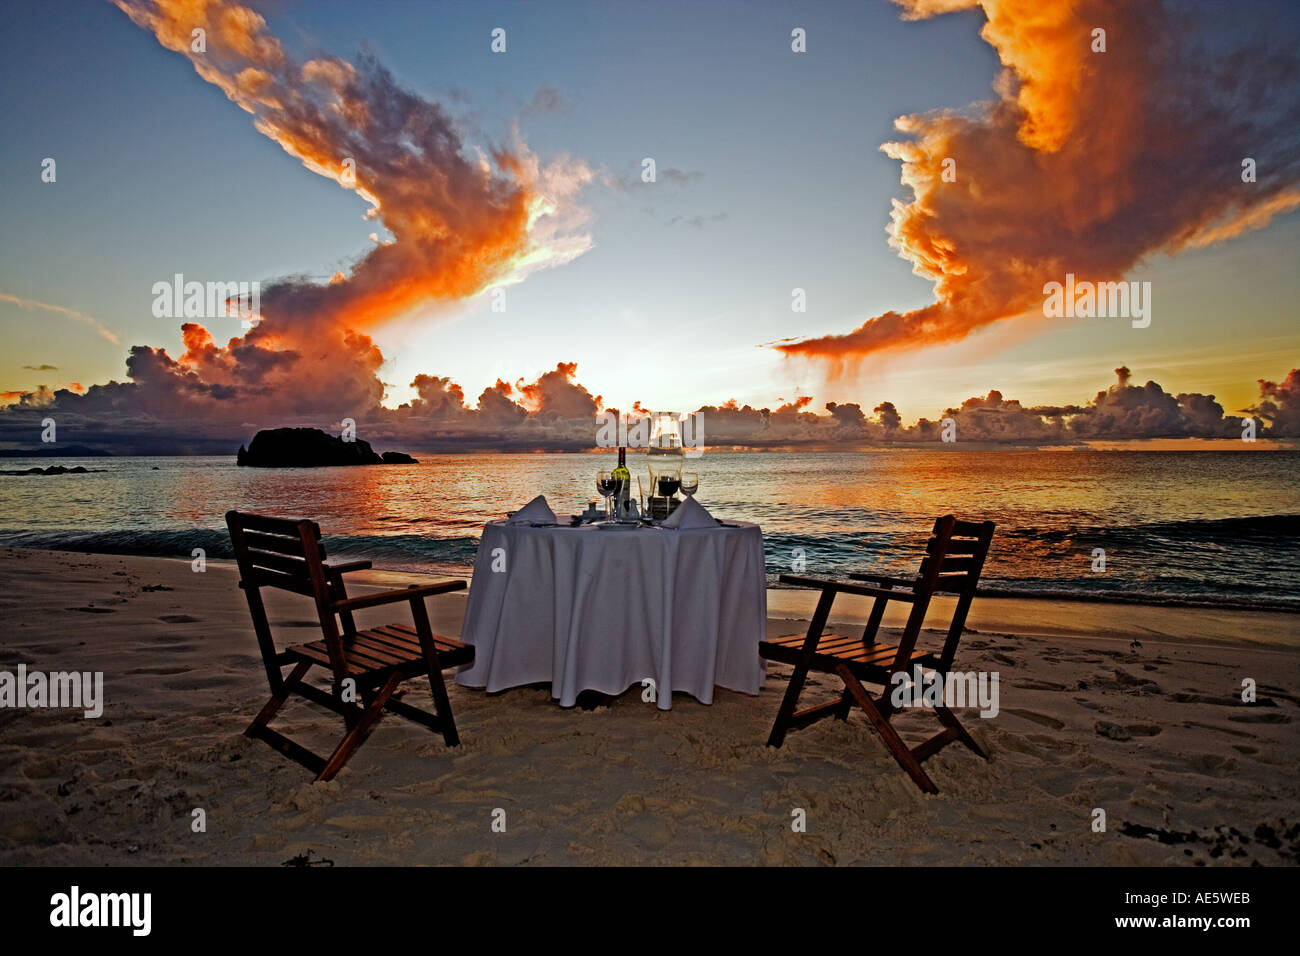 Tisch am Strand Sonnenuntergang im Hintergrund Eigenschaft freigegeben Cousine Island-Seychellen Stockfoto